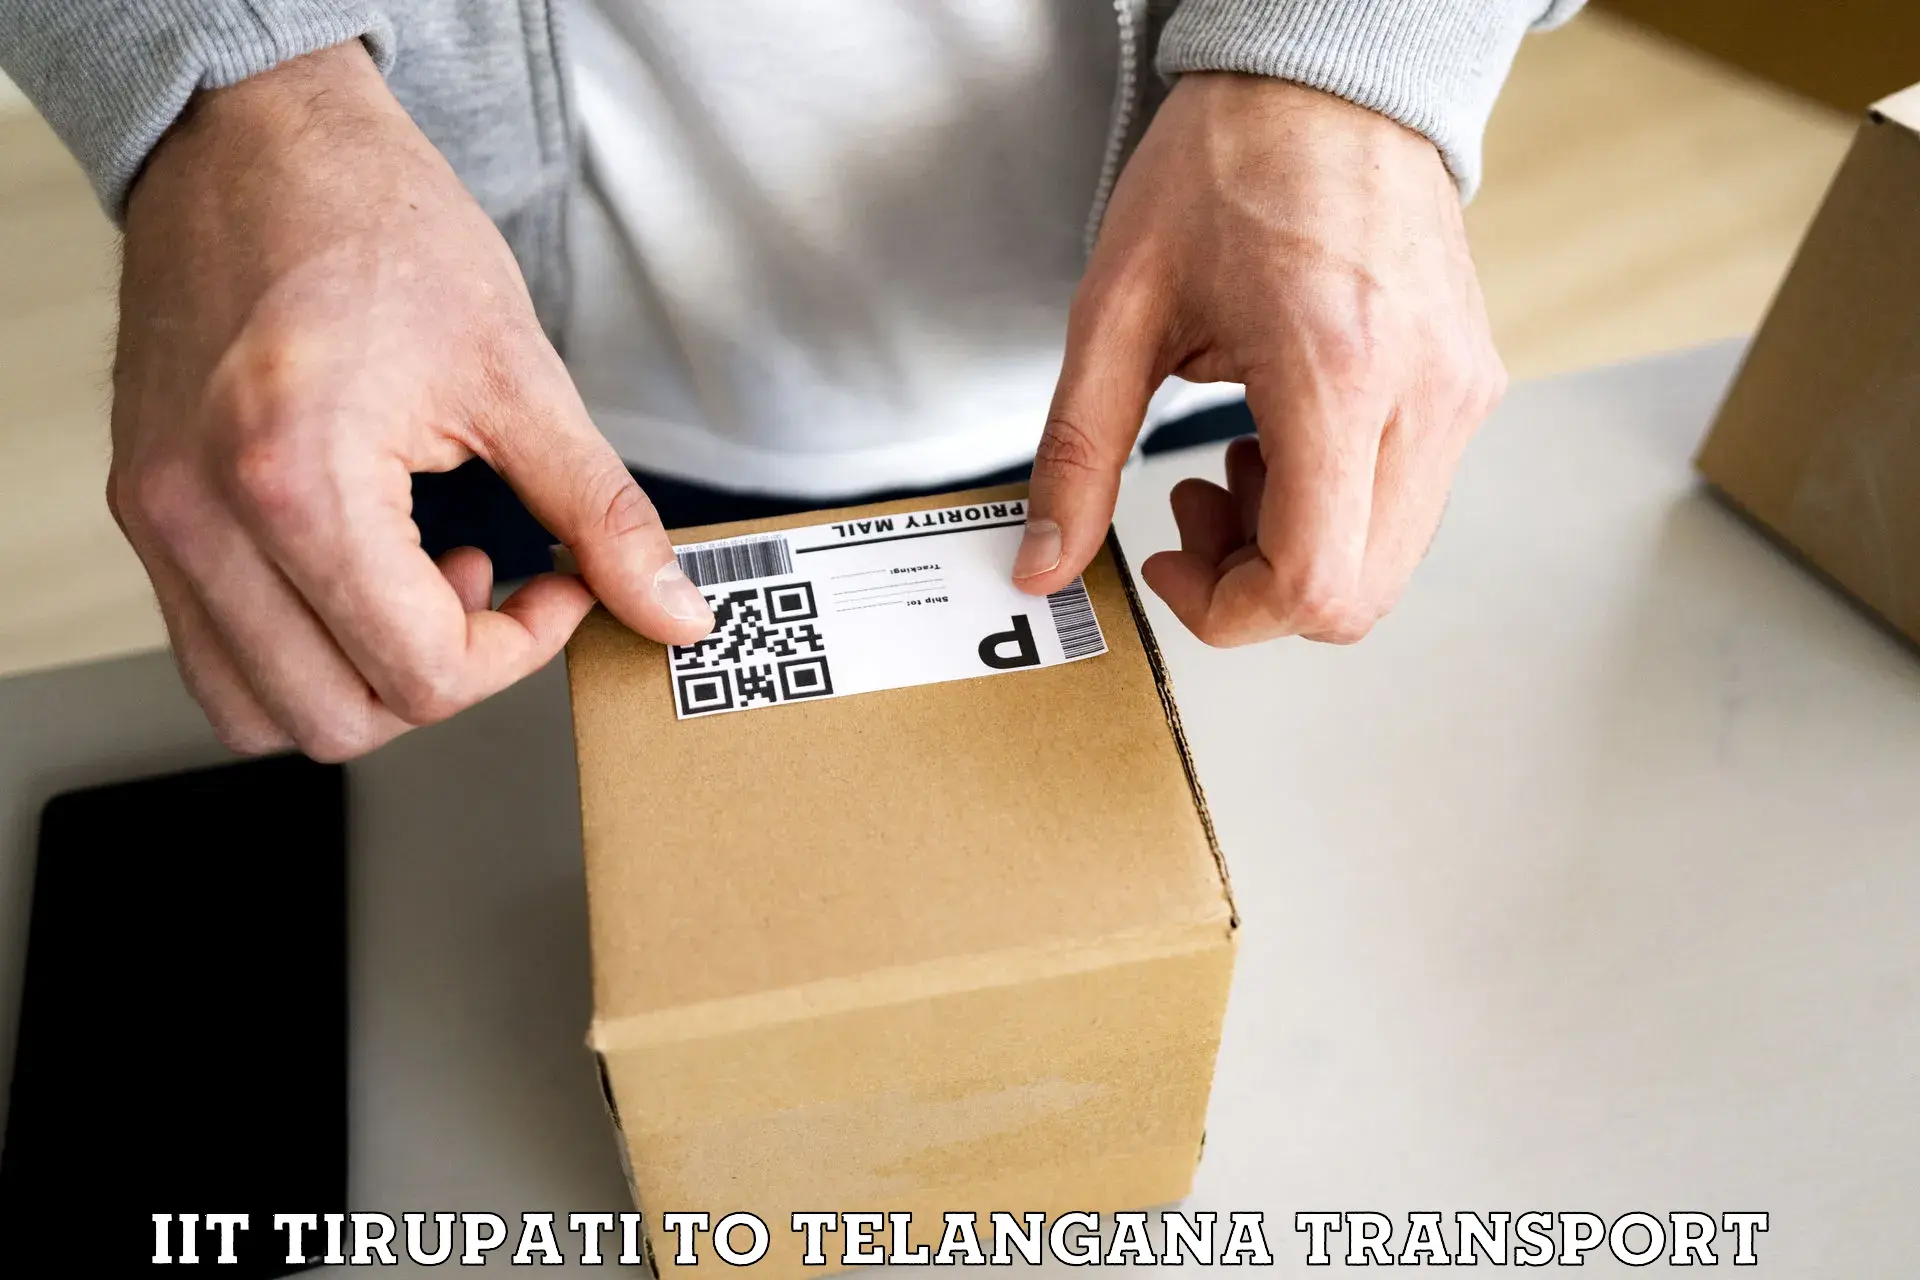 Furniture transport service in IIT Tirupati to Yellareddy